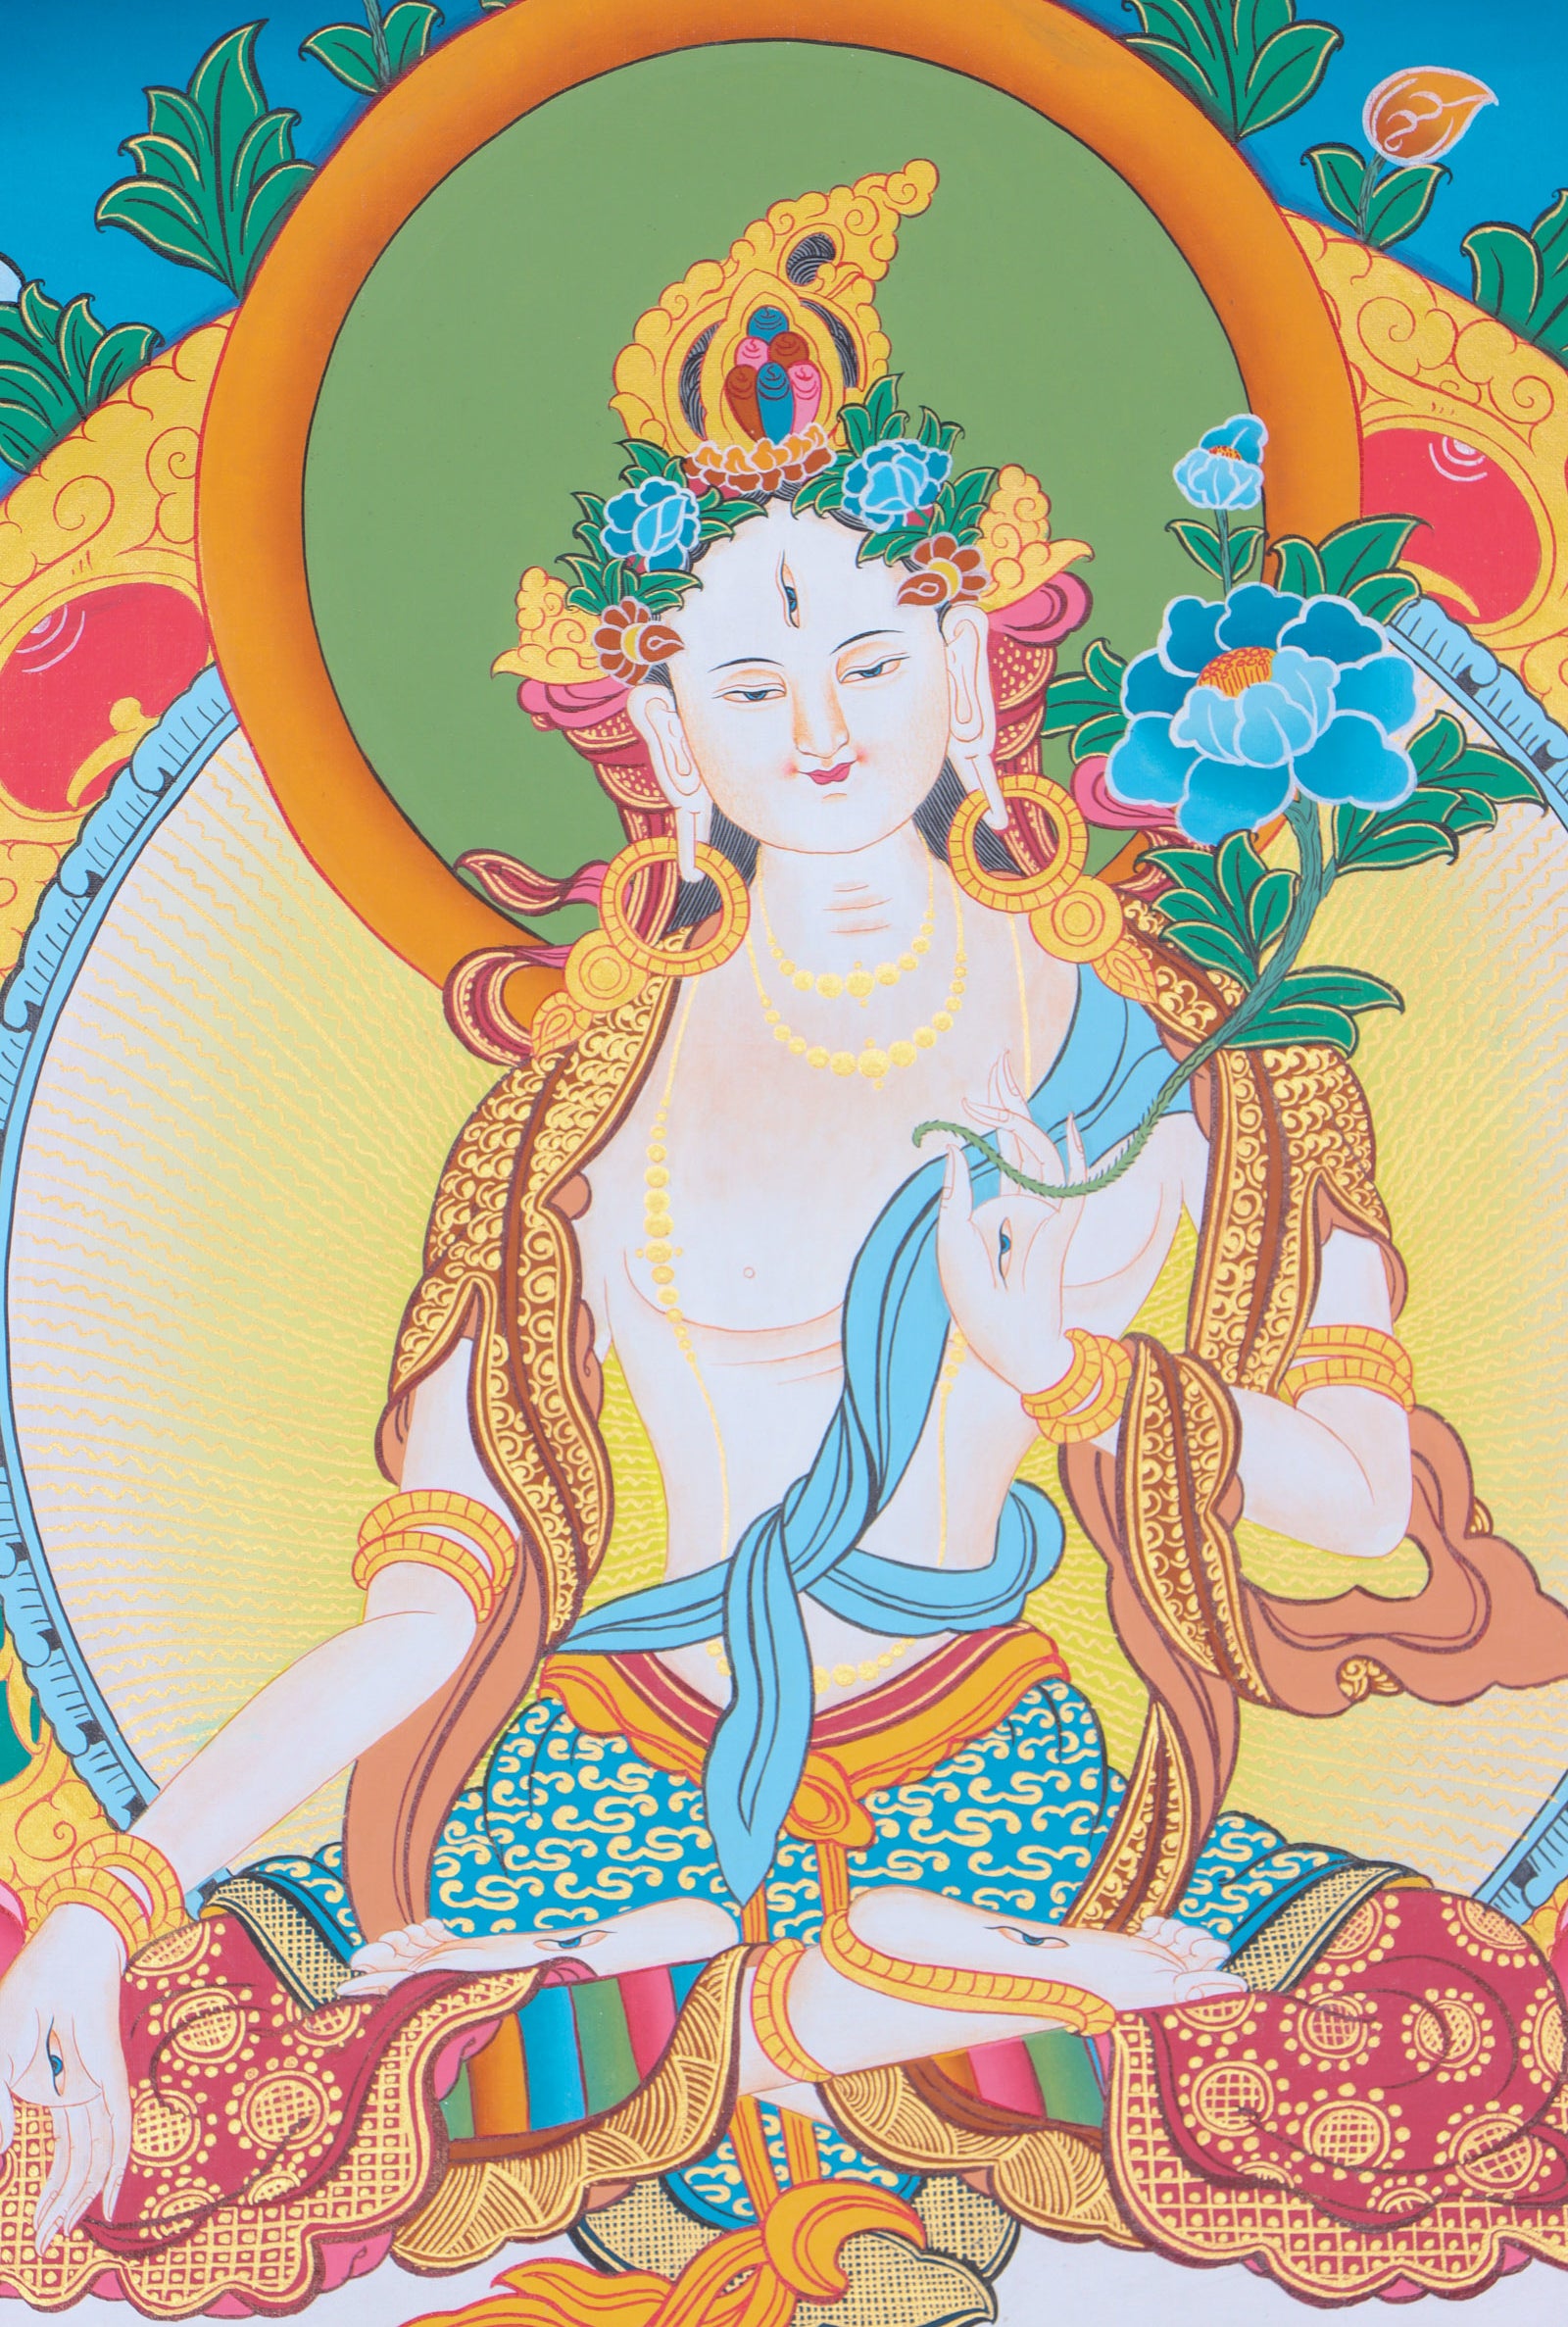  White Tara Thangka for enlightenment.